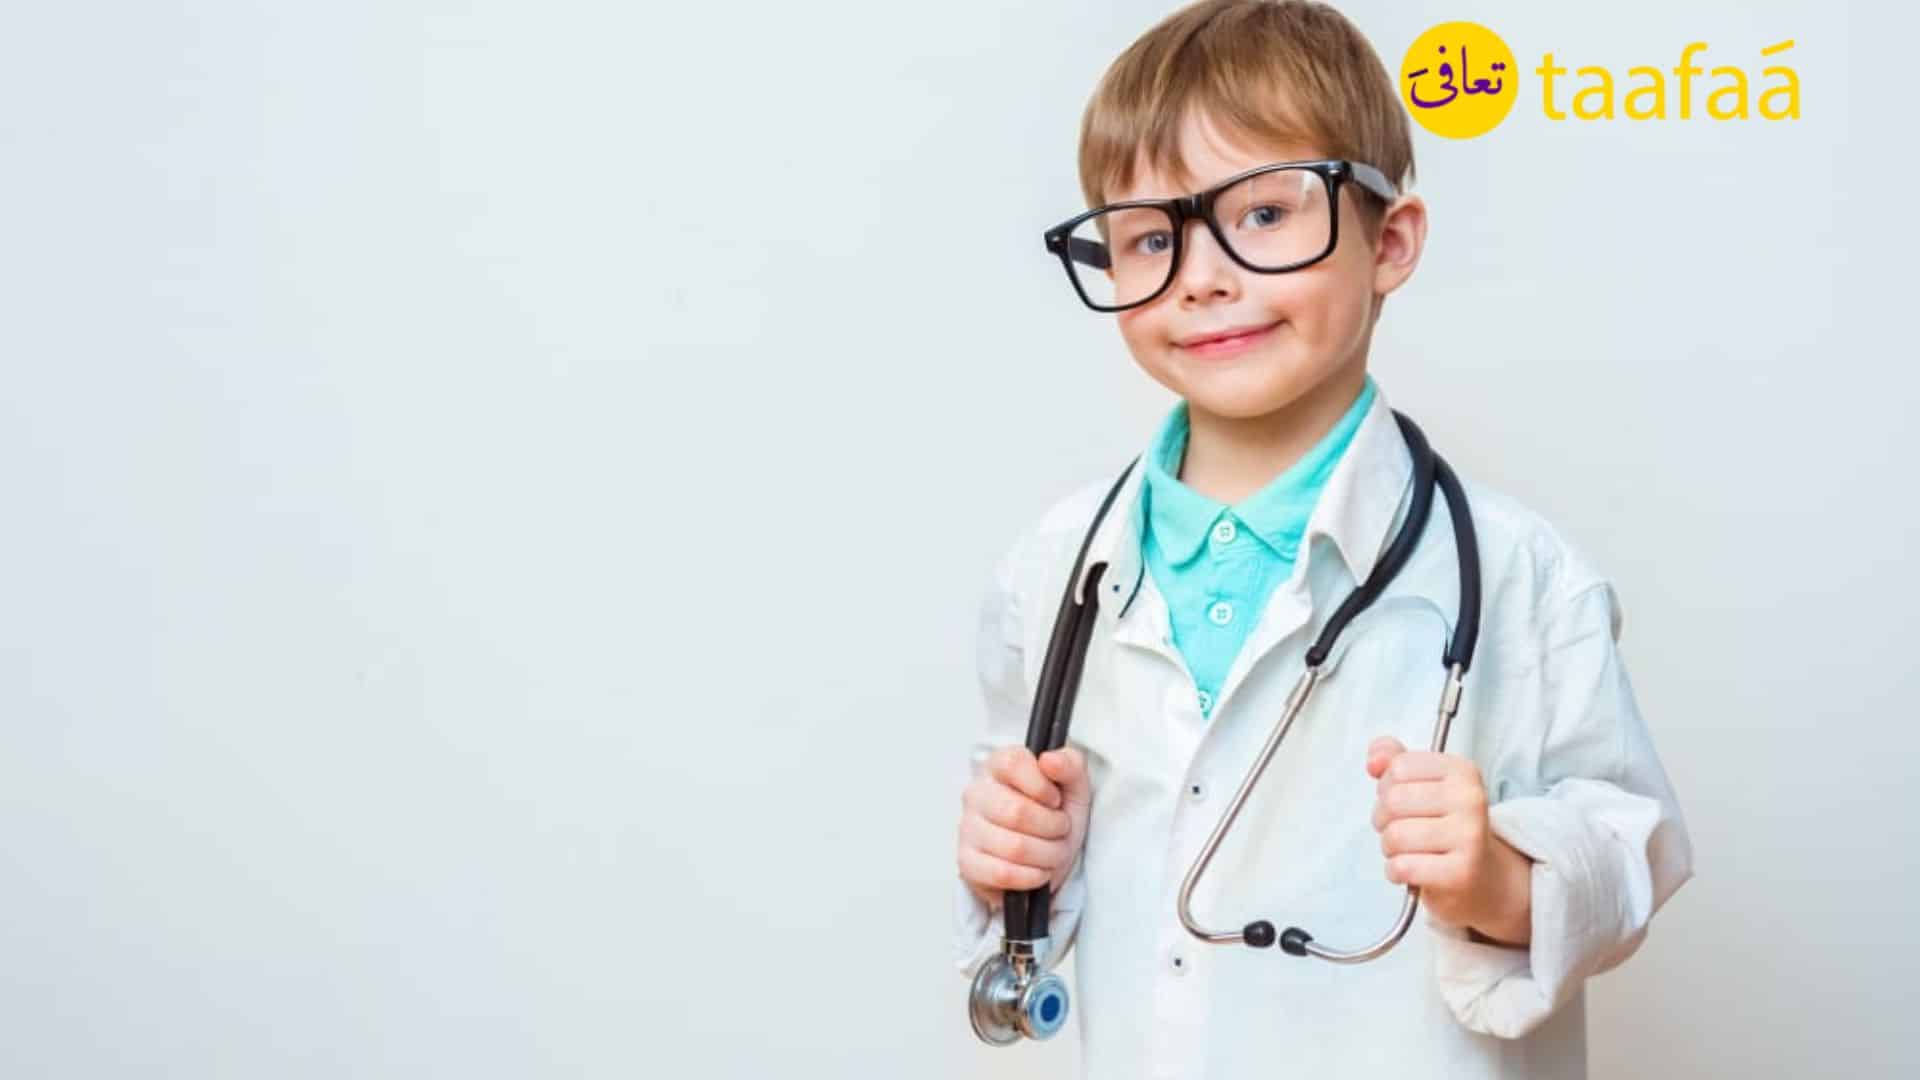 دكتور جراحة عامة اطفال